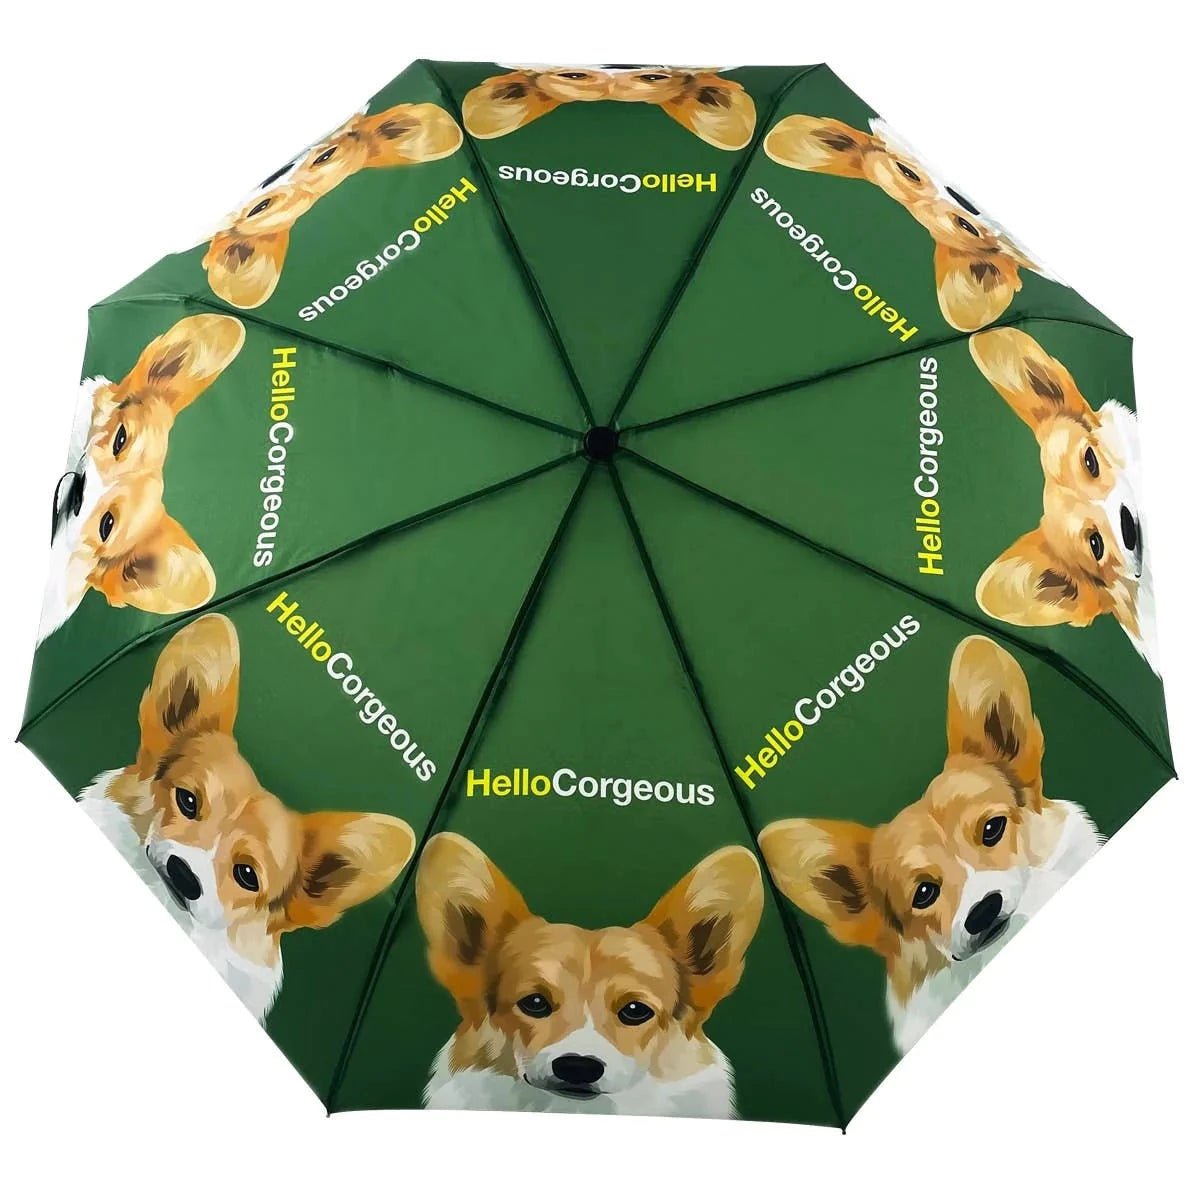 Umbrella - Hello Corgeous - Gift & Gather